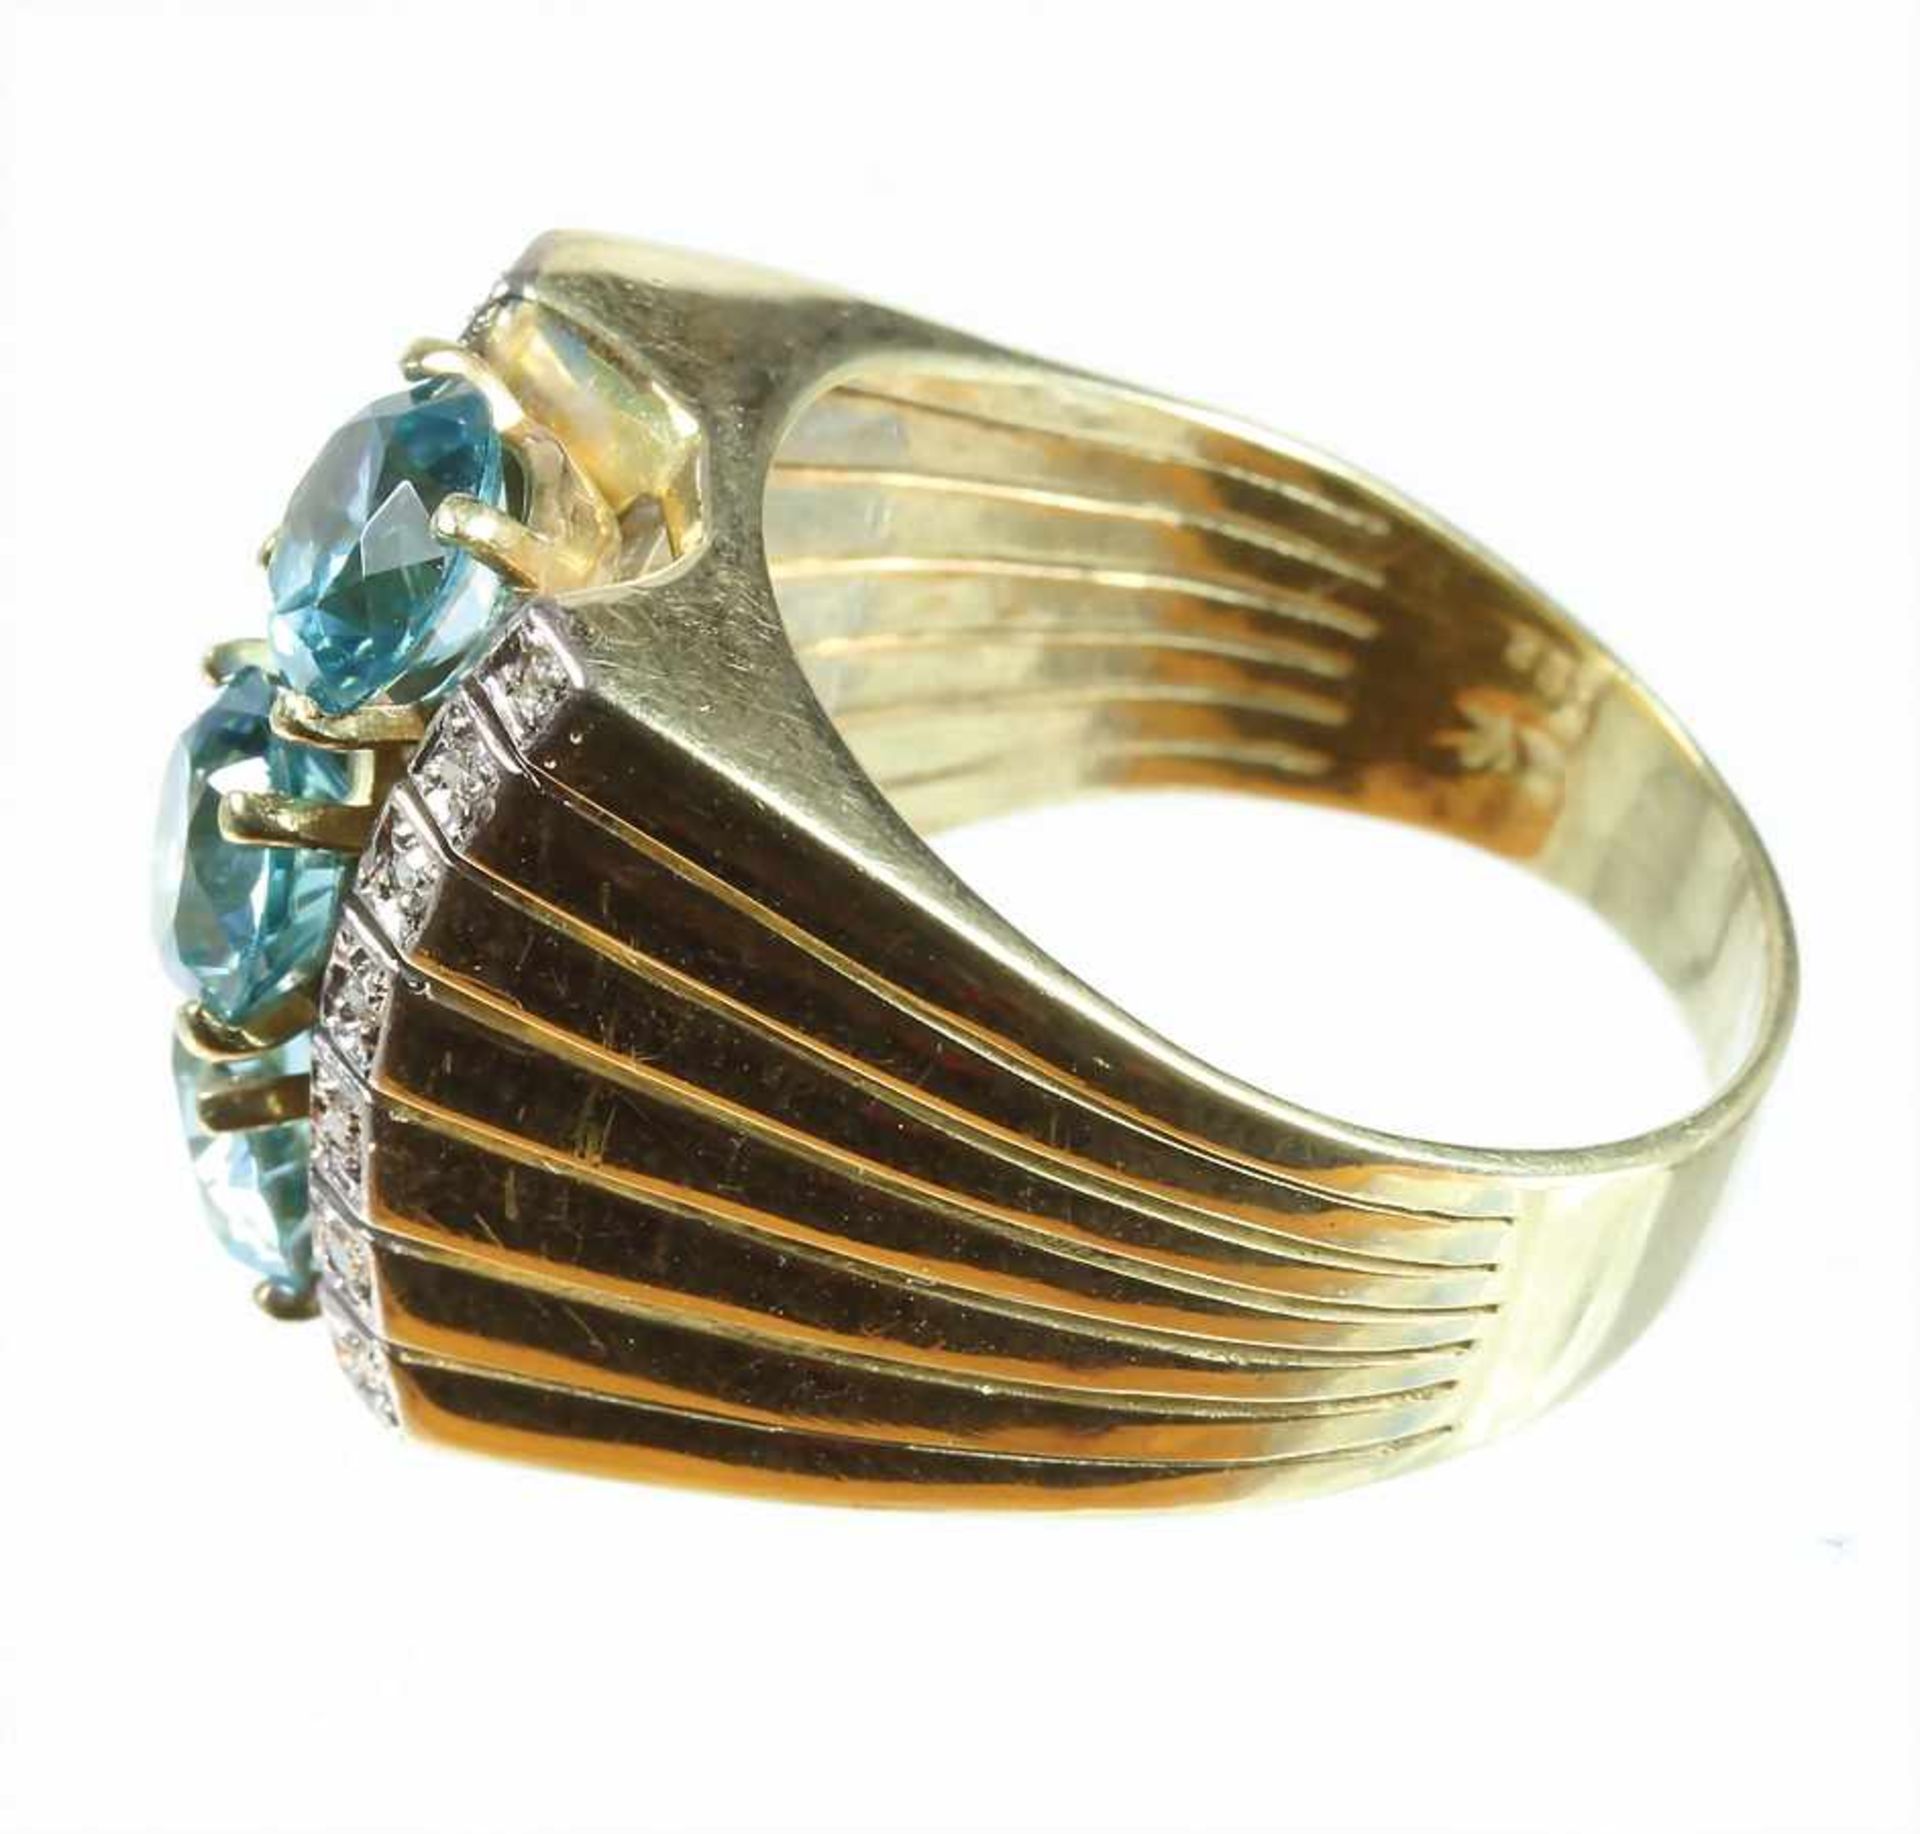 Ring, GG 585/000, 3 zentrale Zirkone (facettiert) ca. 3,4 ct, leuchtendes blaugrün, 14 Diamanten - Bild 4 aus 4